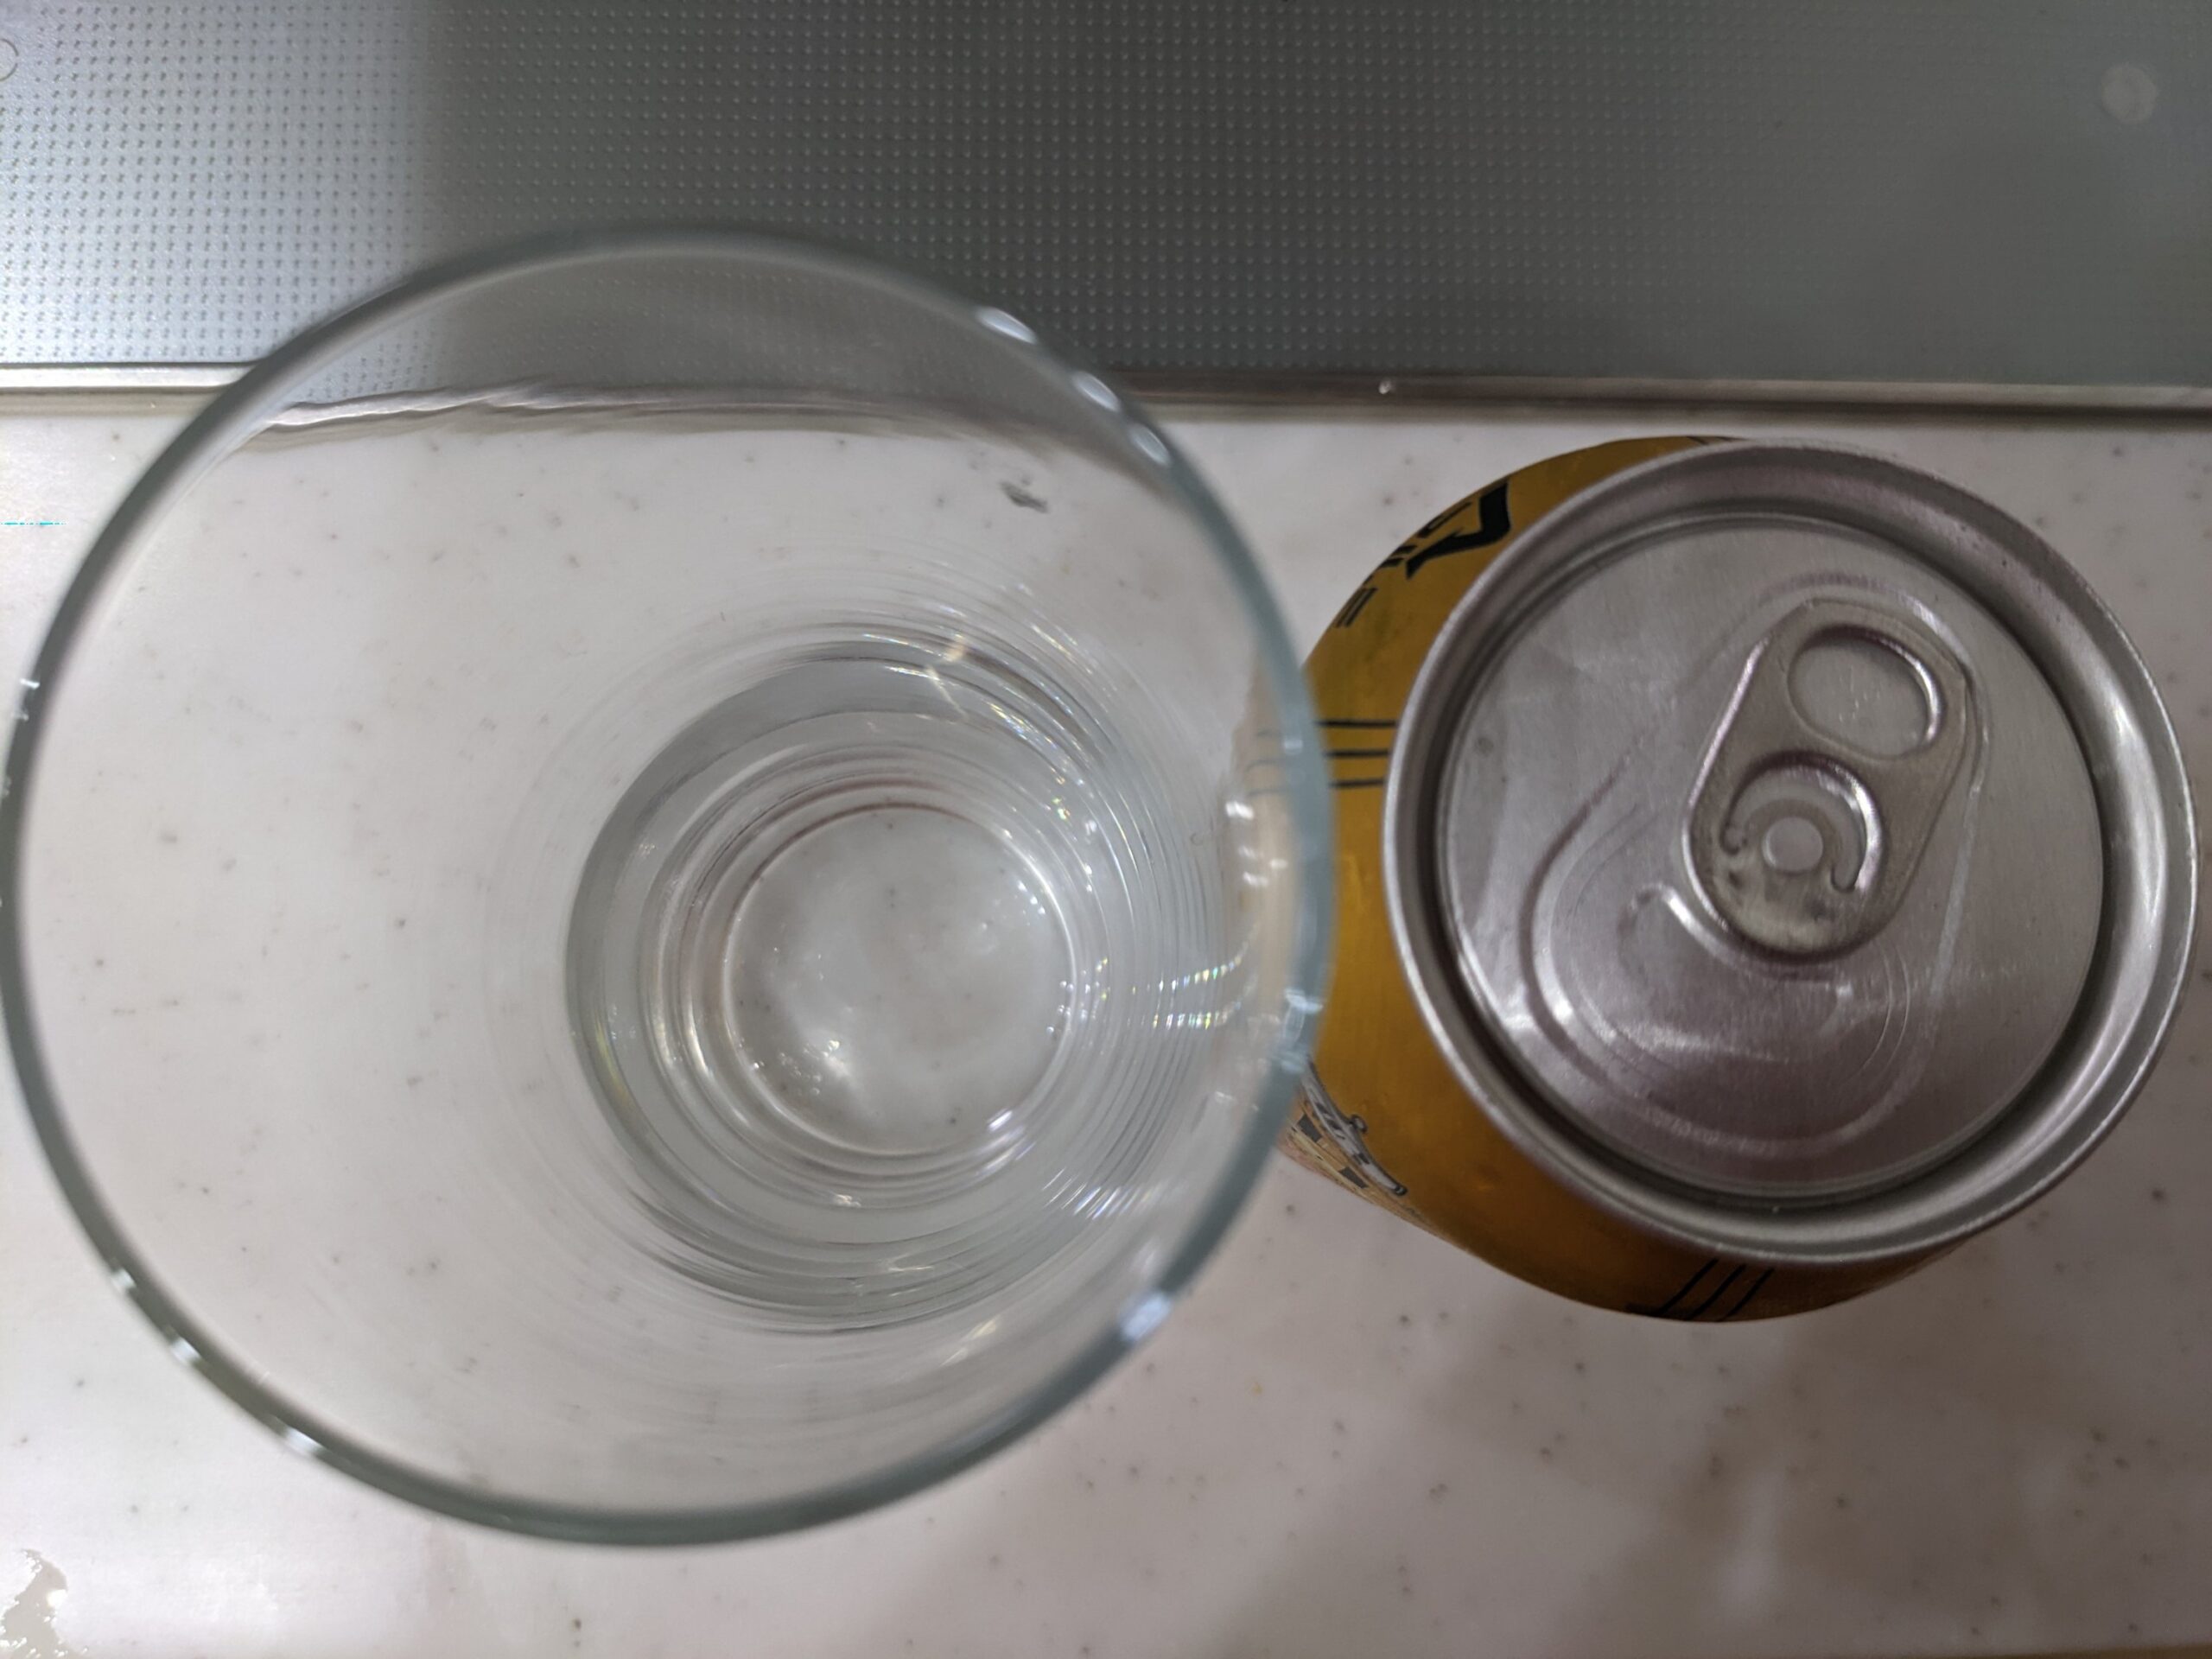 上から見たグラスと缶の「ブローリープレミアムラガー」